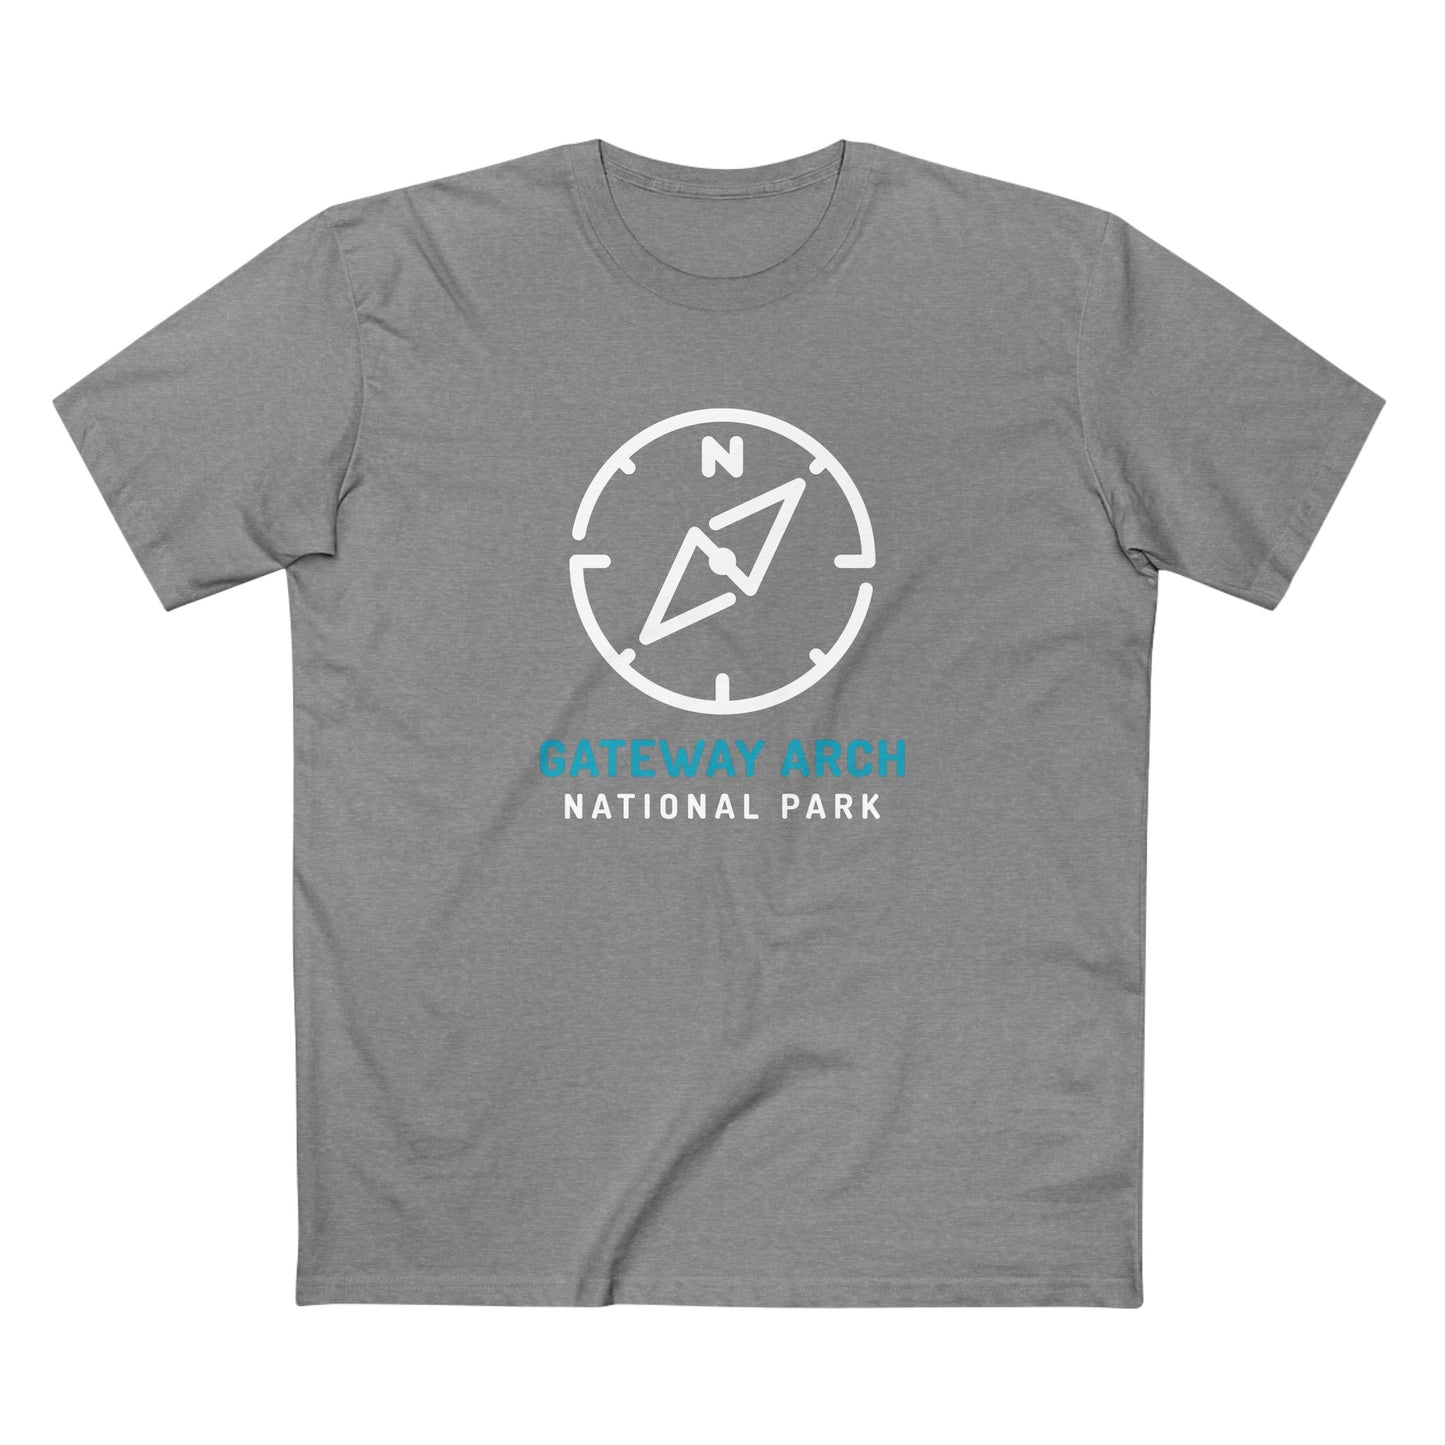 Gateway Arch National Park T-Shirt Compass Design